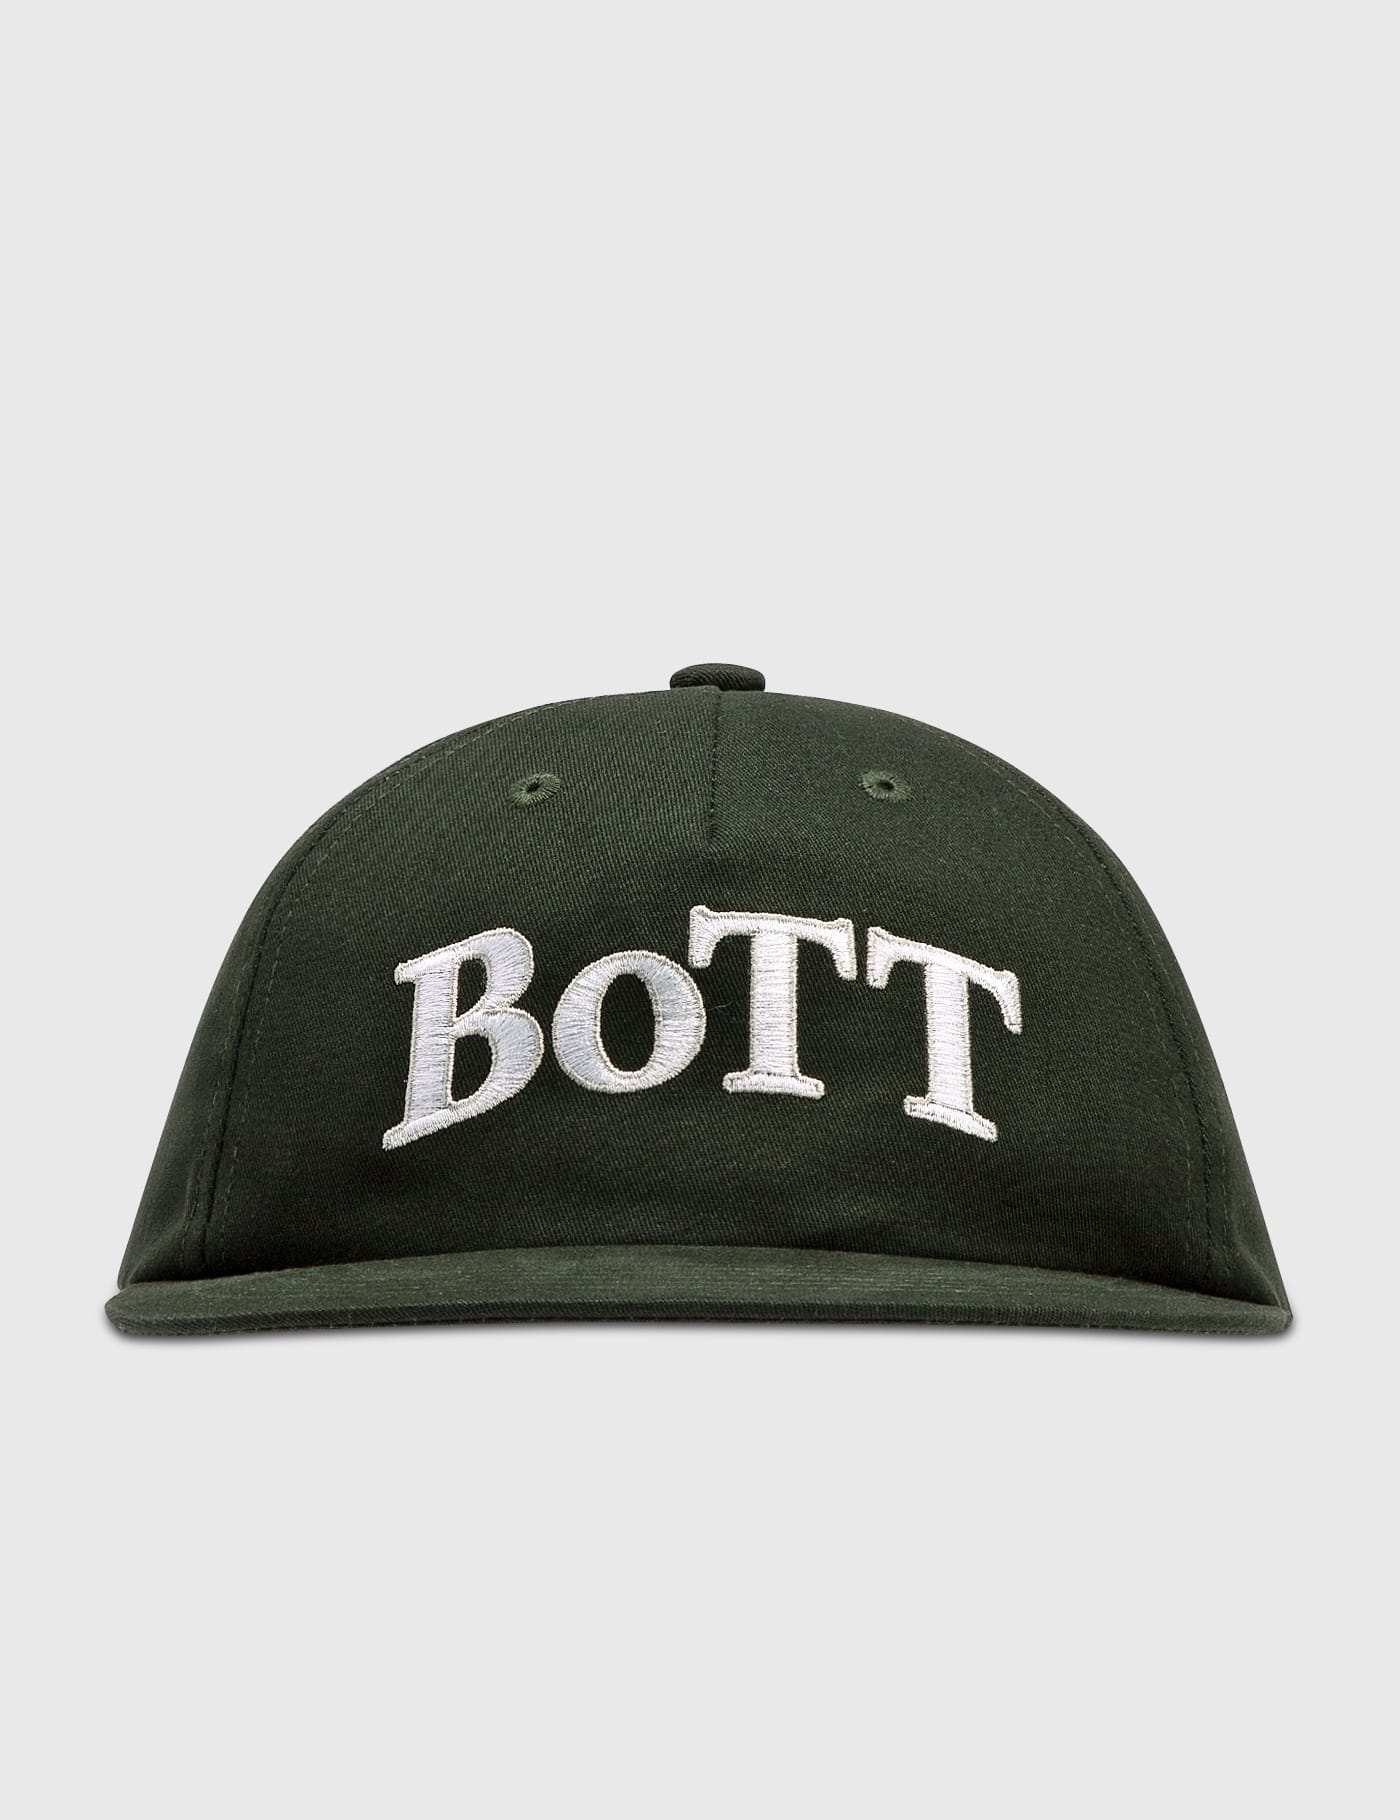 BoTT - OG ロゴ 5 パネル キャップ | HBX - ハイプビースト(Hypebeast 